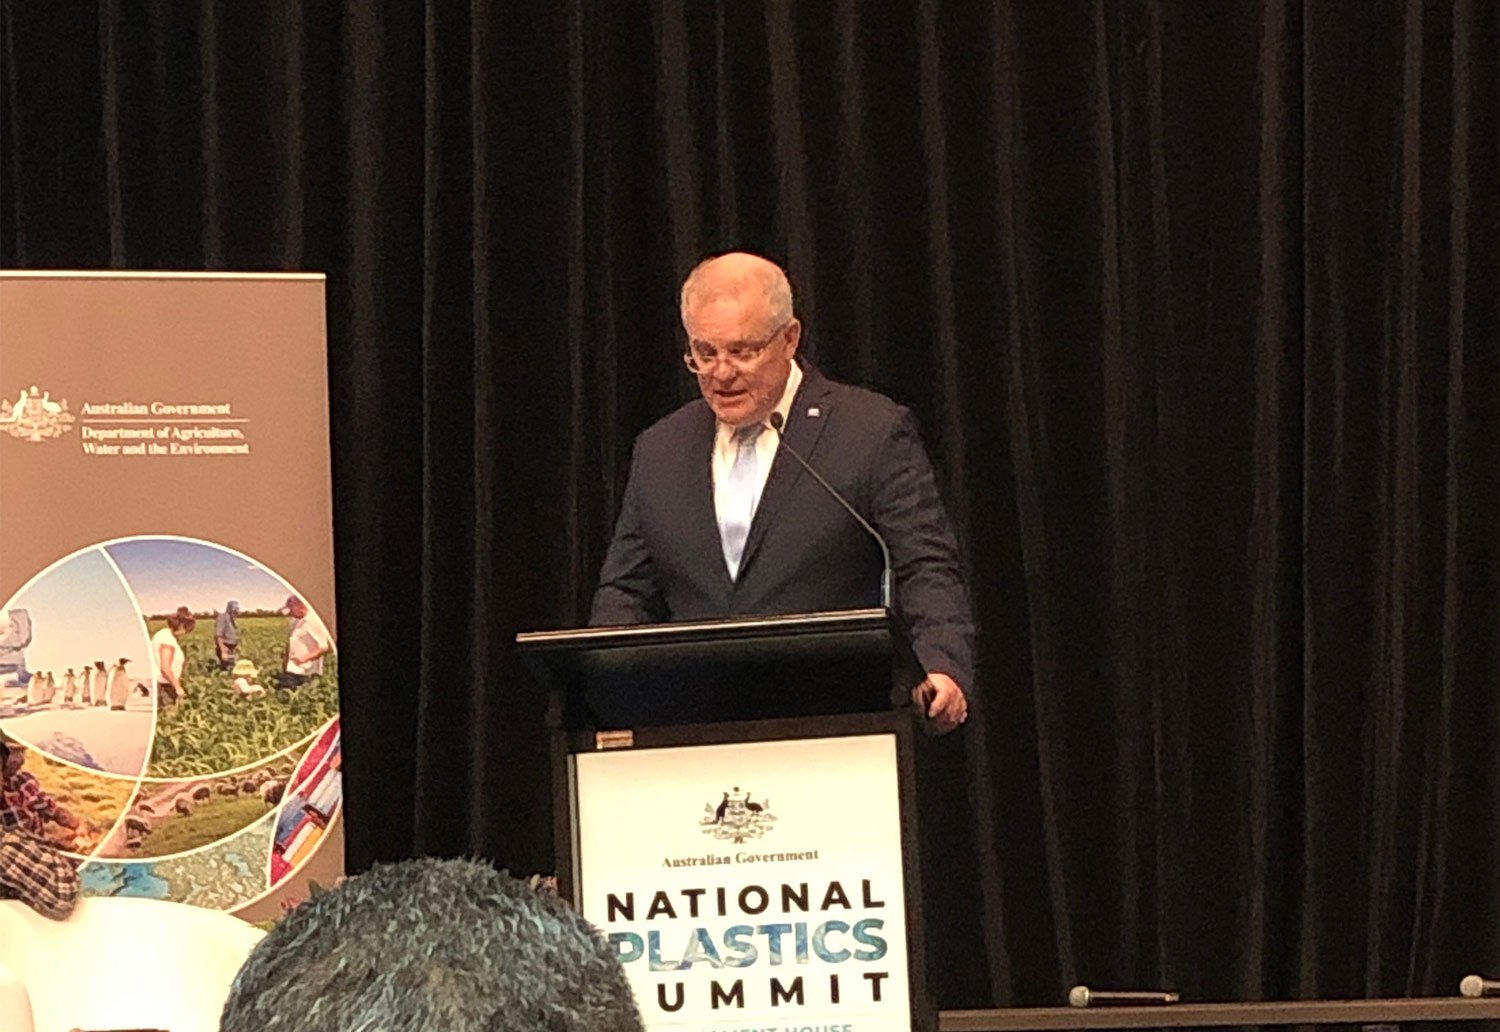 Prime Minister Scott Morrison presents at the National Plastics Summit